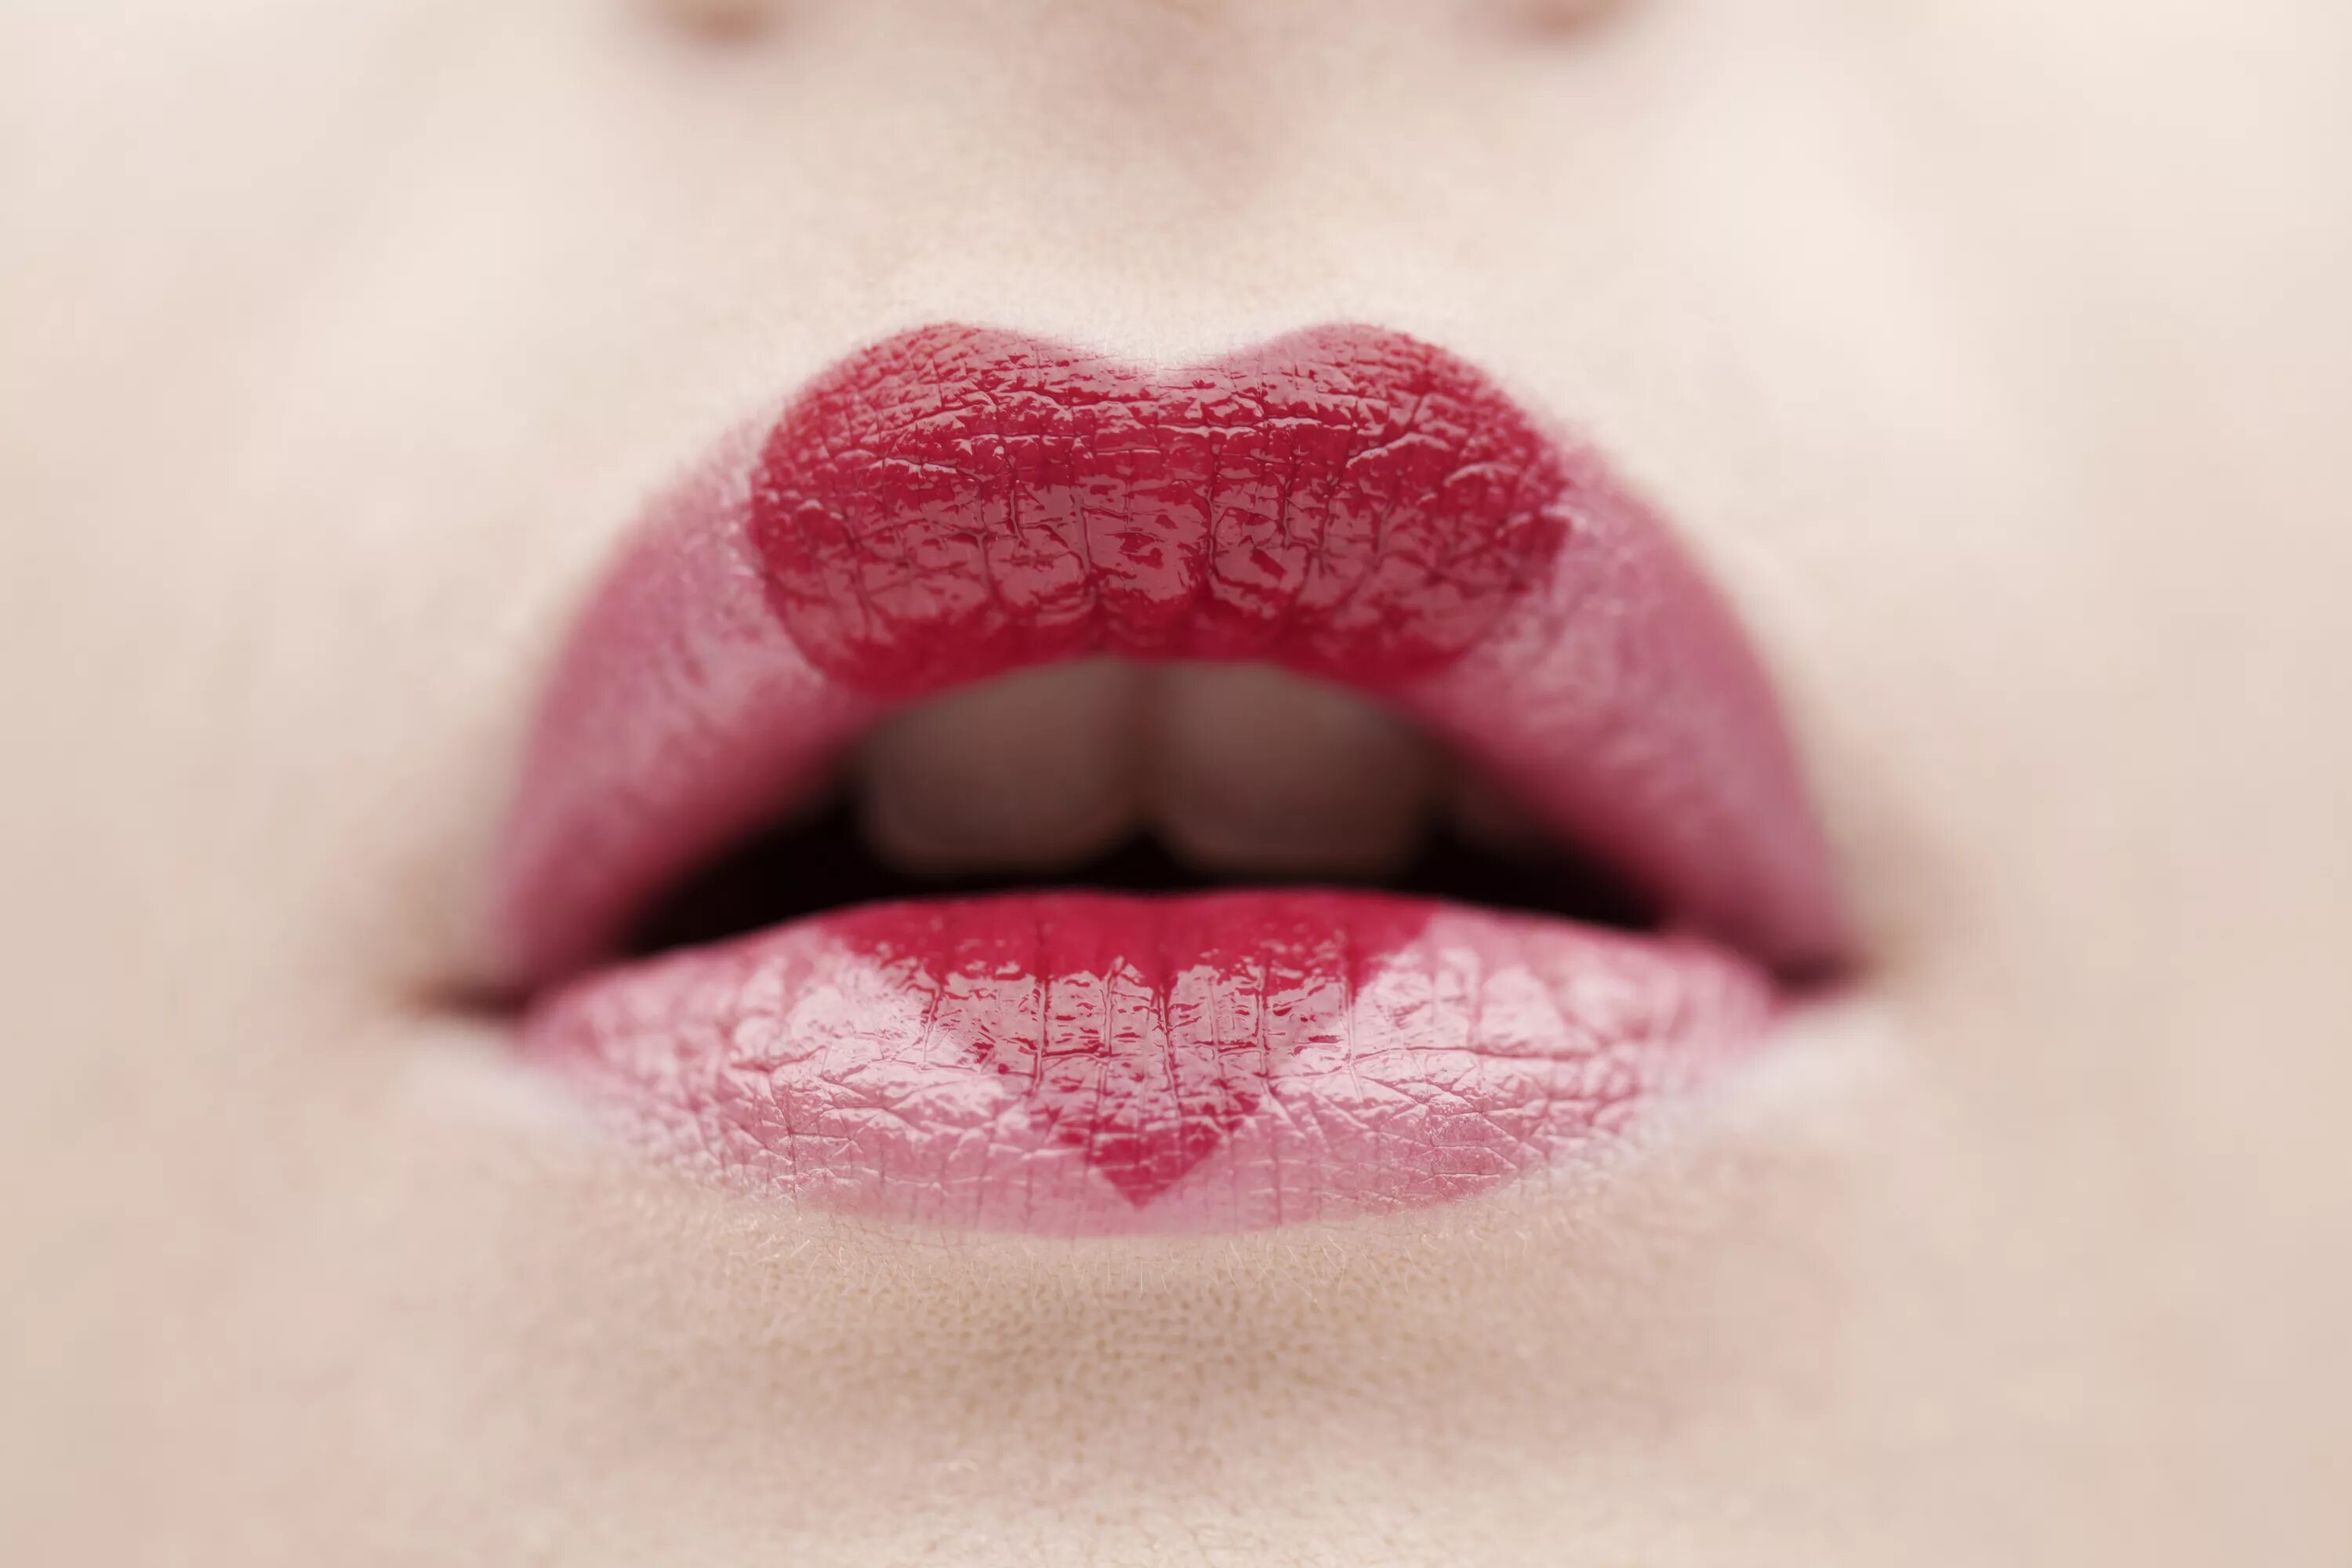 I love lips. Женские губы. Сочные губки. Губы накрашенные сердечком. Губки женские.